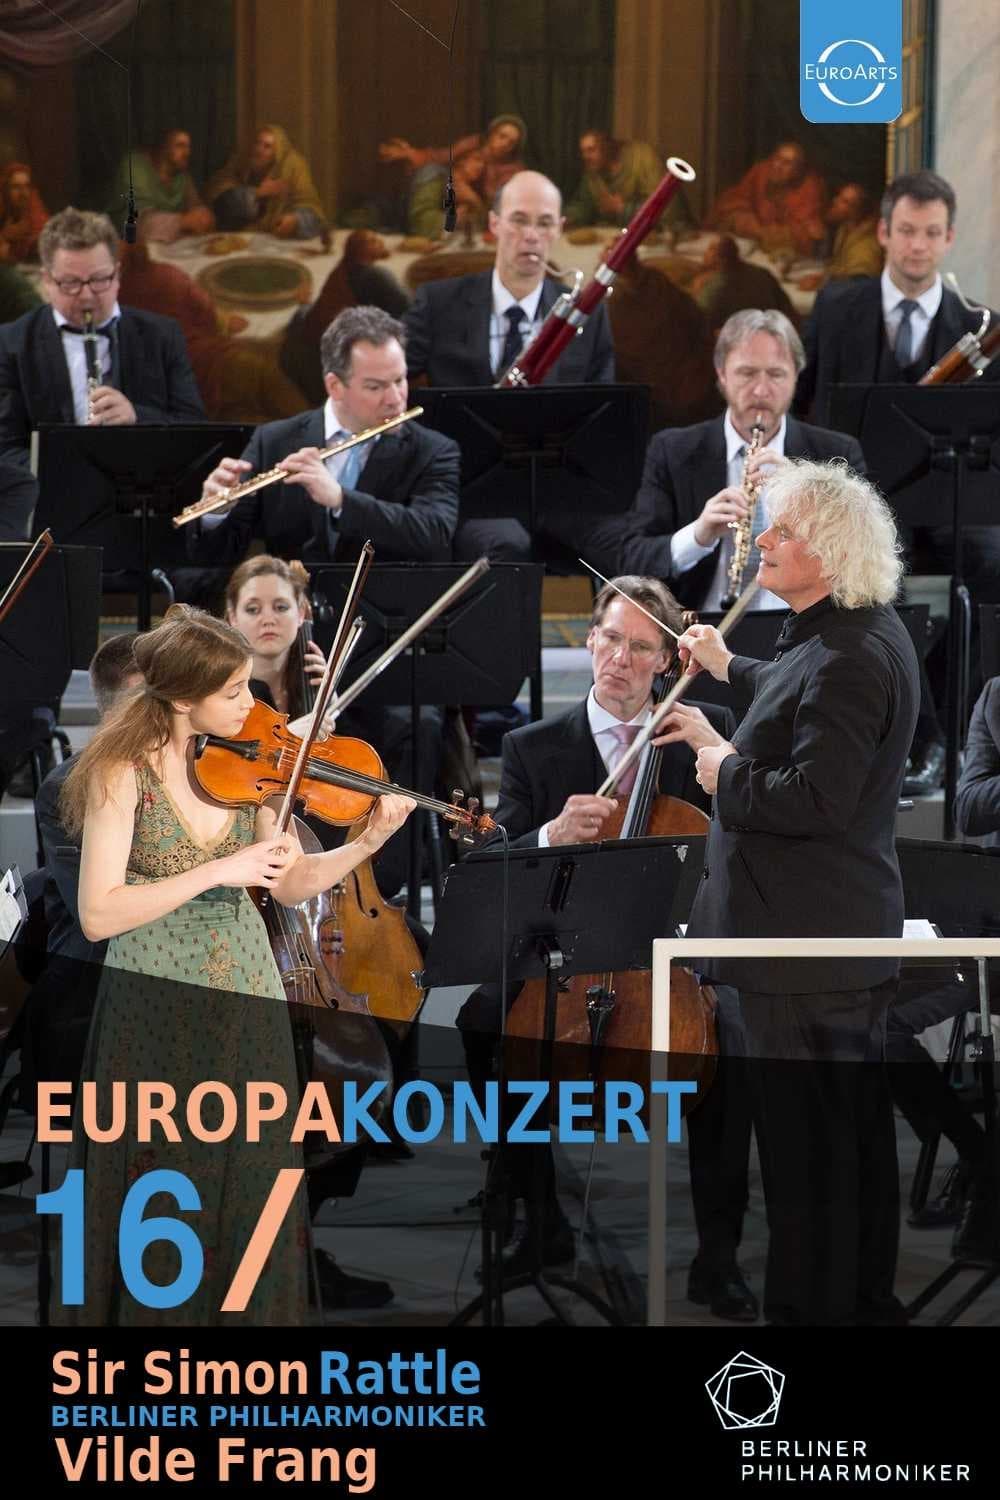 Europakonzert 2016 from Røros